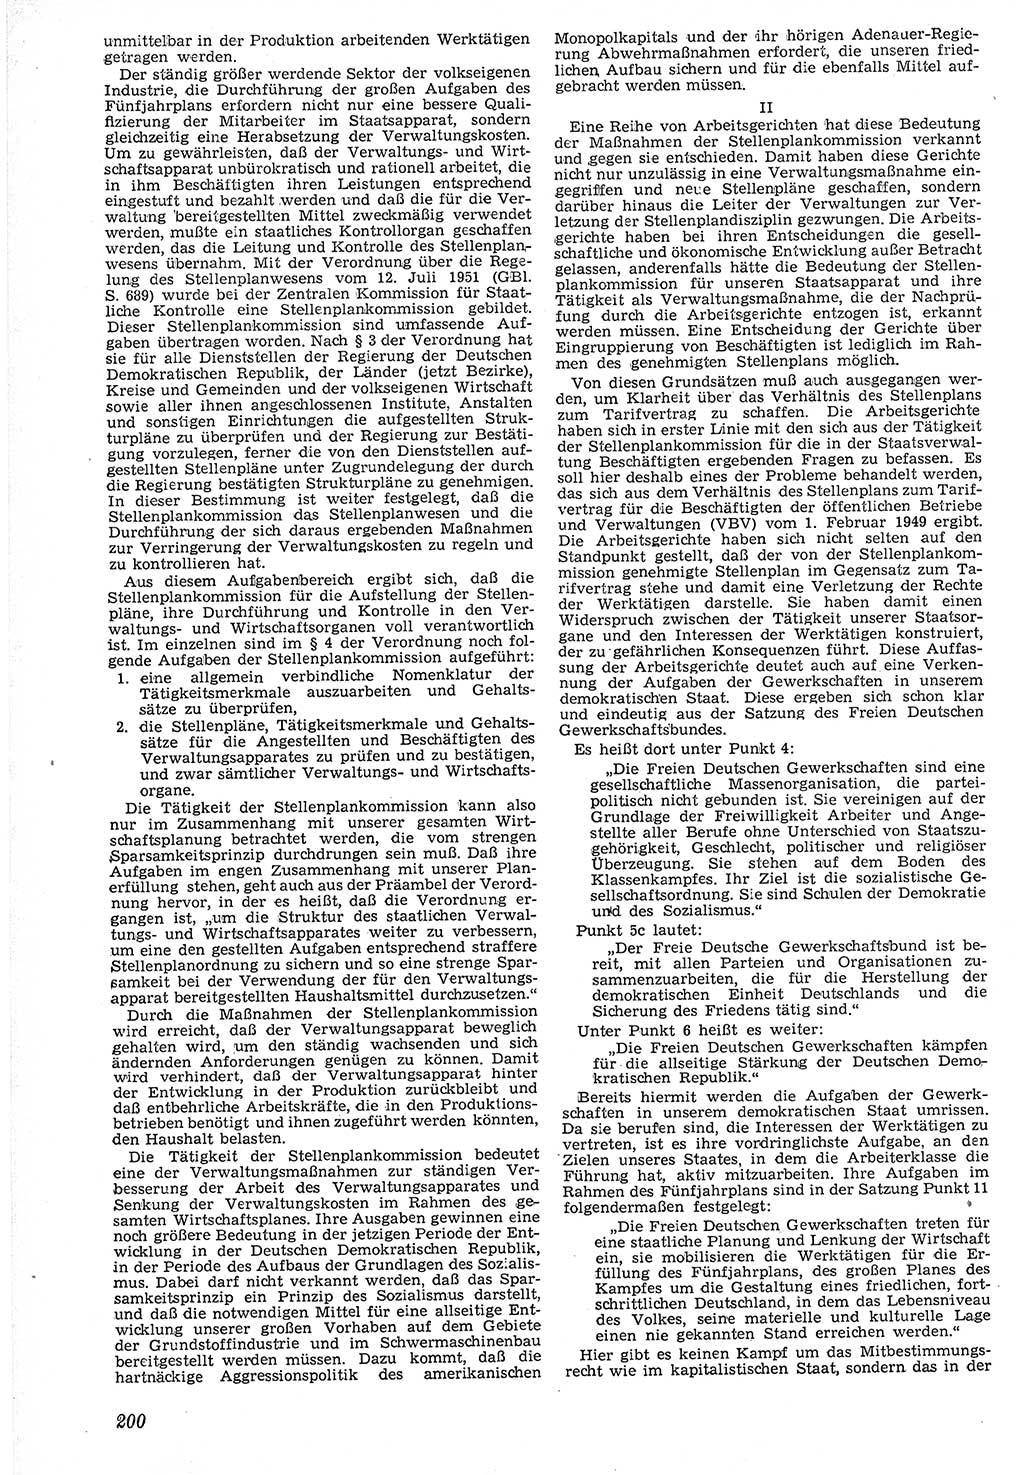 Neue Justiz (NJ), Zeitschrift für Recht und Rechtswissenschaft [Deutsche Demokratische Republik (DDR)], 7. Jahrgang 1953, Seite 200 (NJ DDR 1953, S. 200)